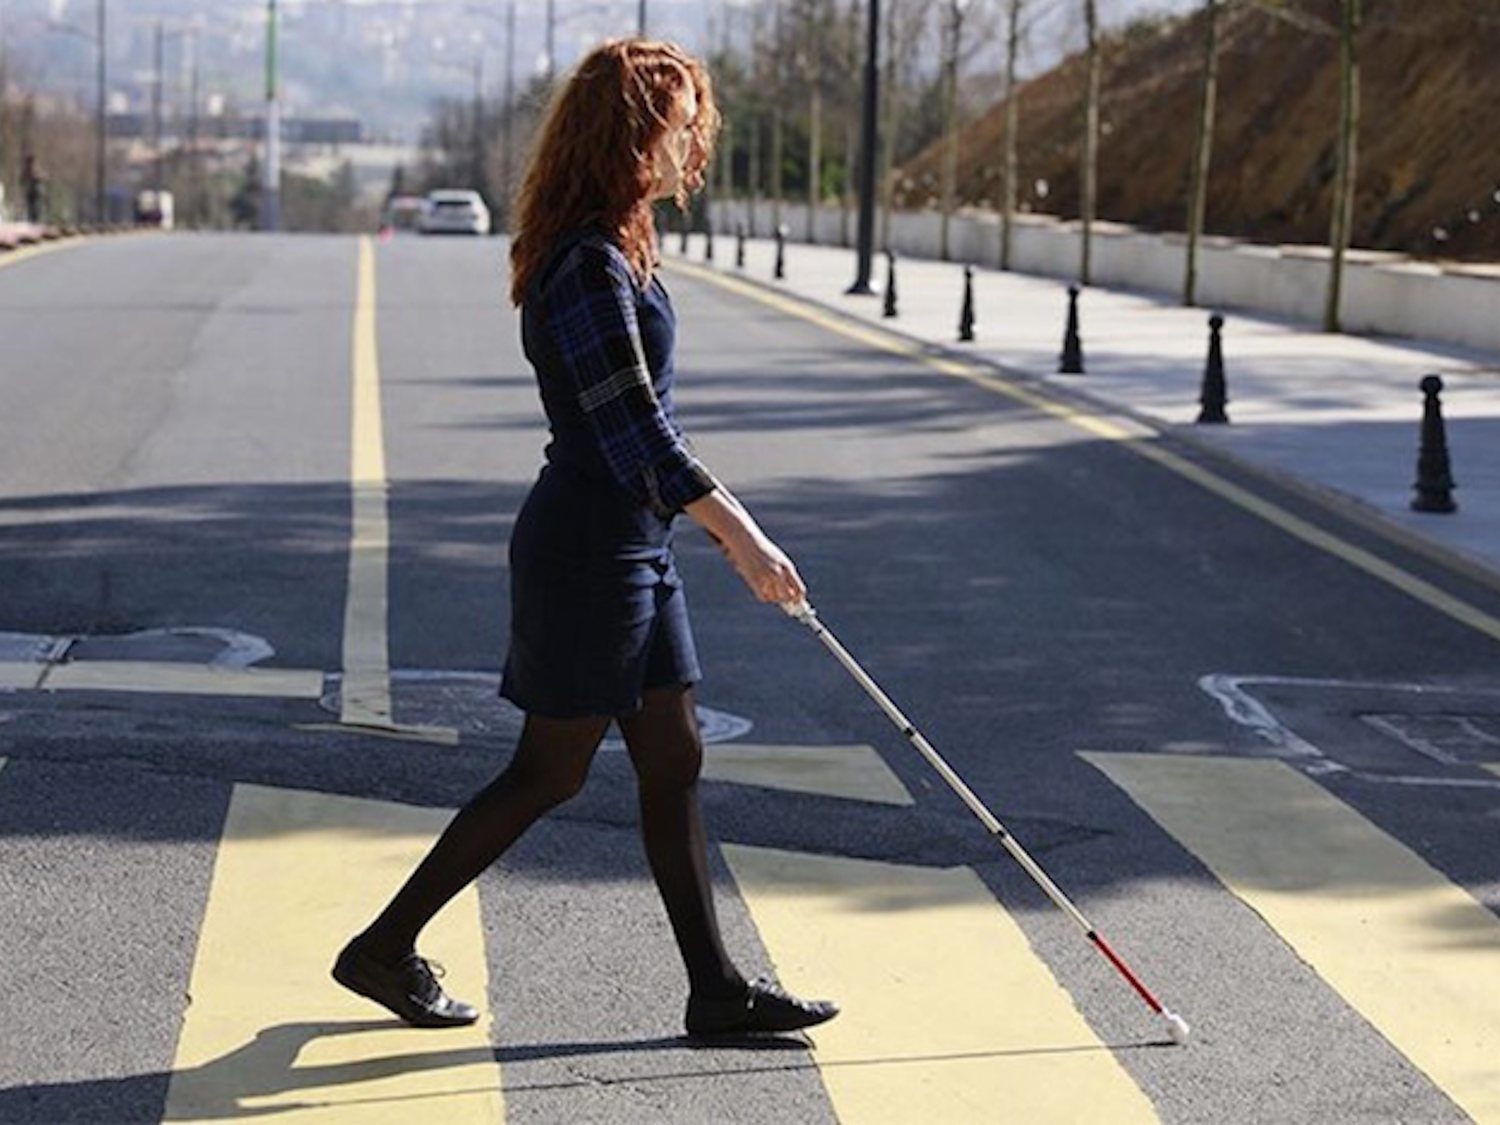 Crean un bastón inteligente para ciegos equipado con Google Maps y altavoces